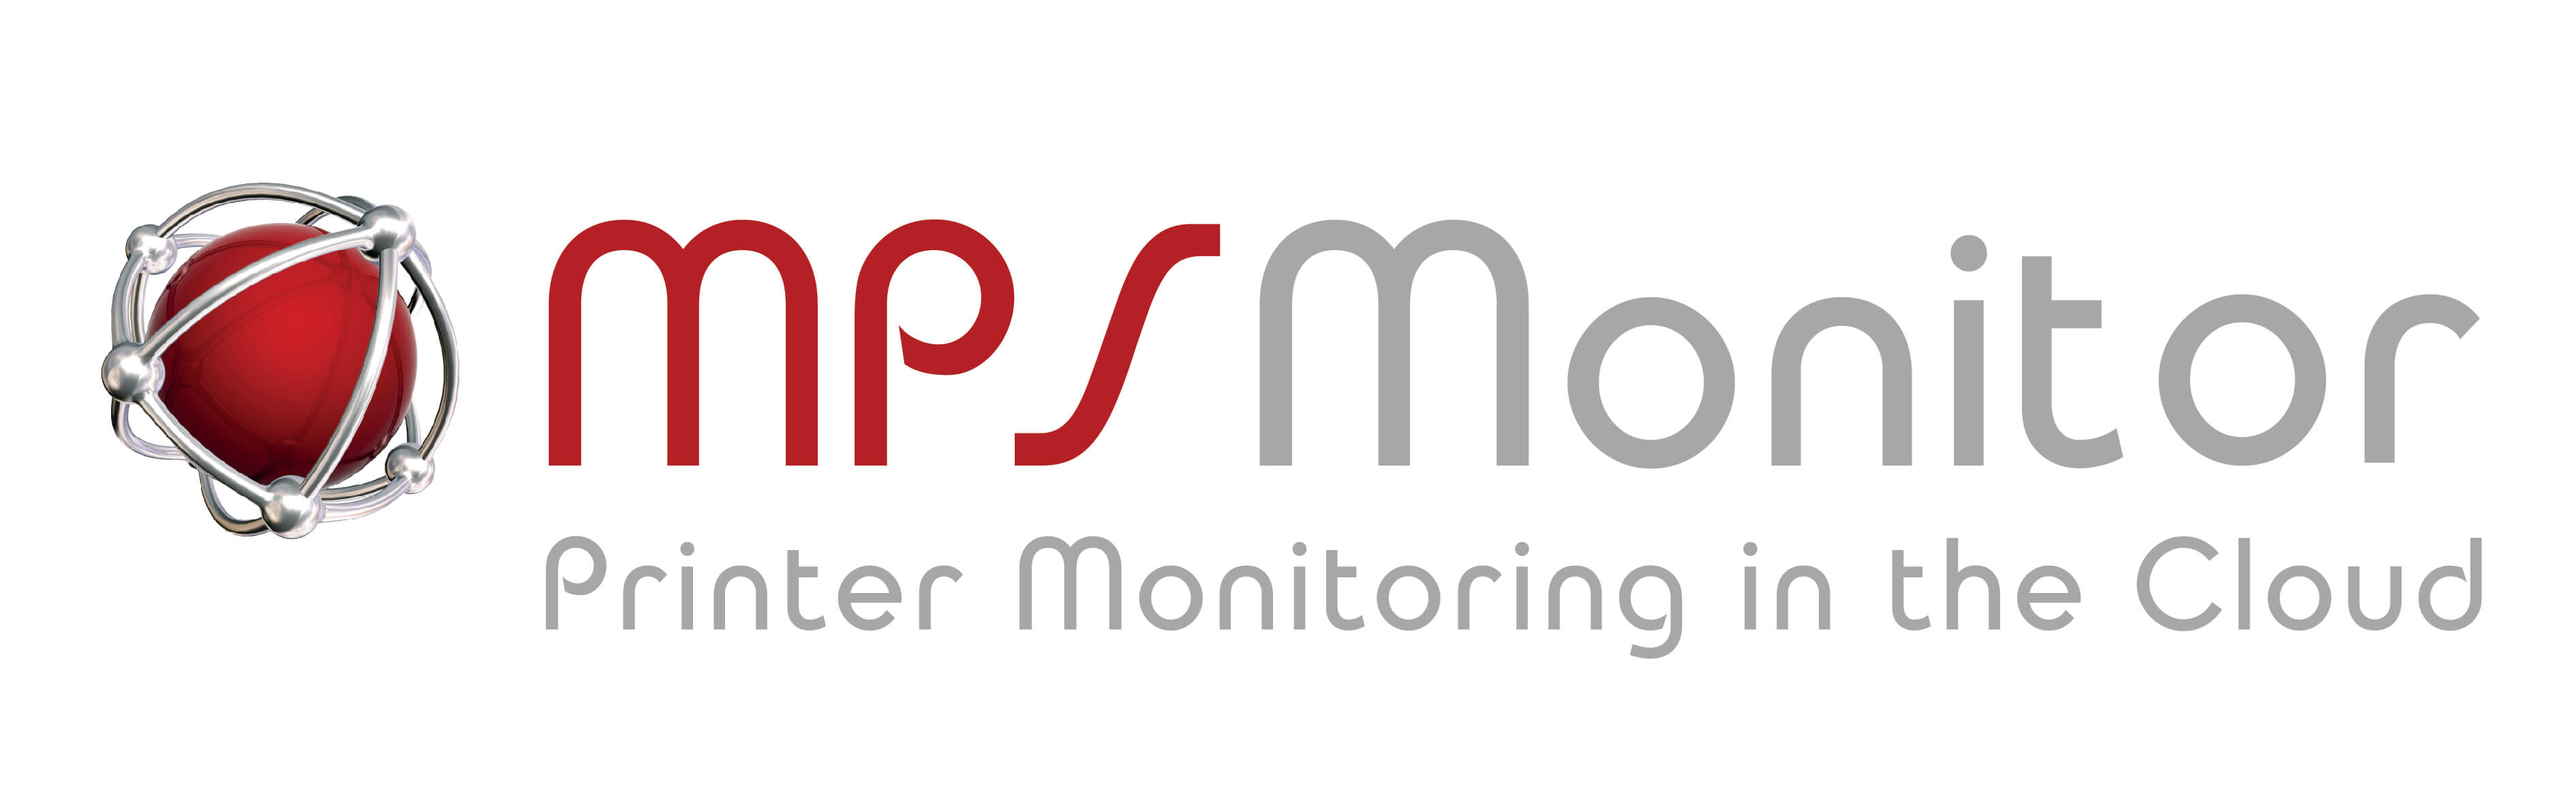 Logo Mps Monitor Printer